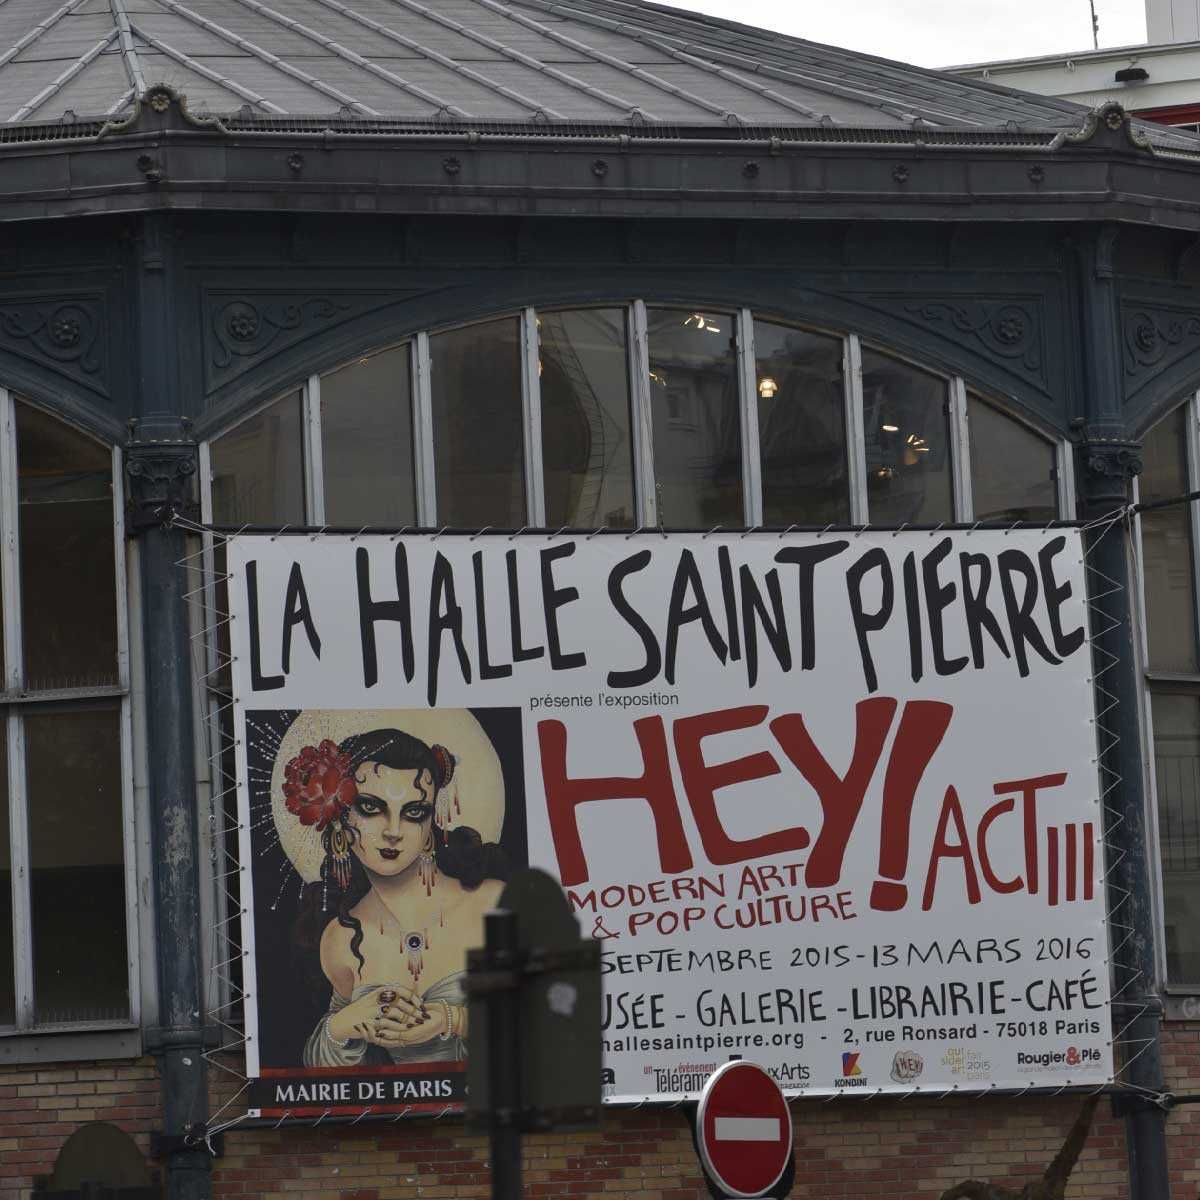 La Halle Saint Pierre